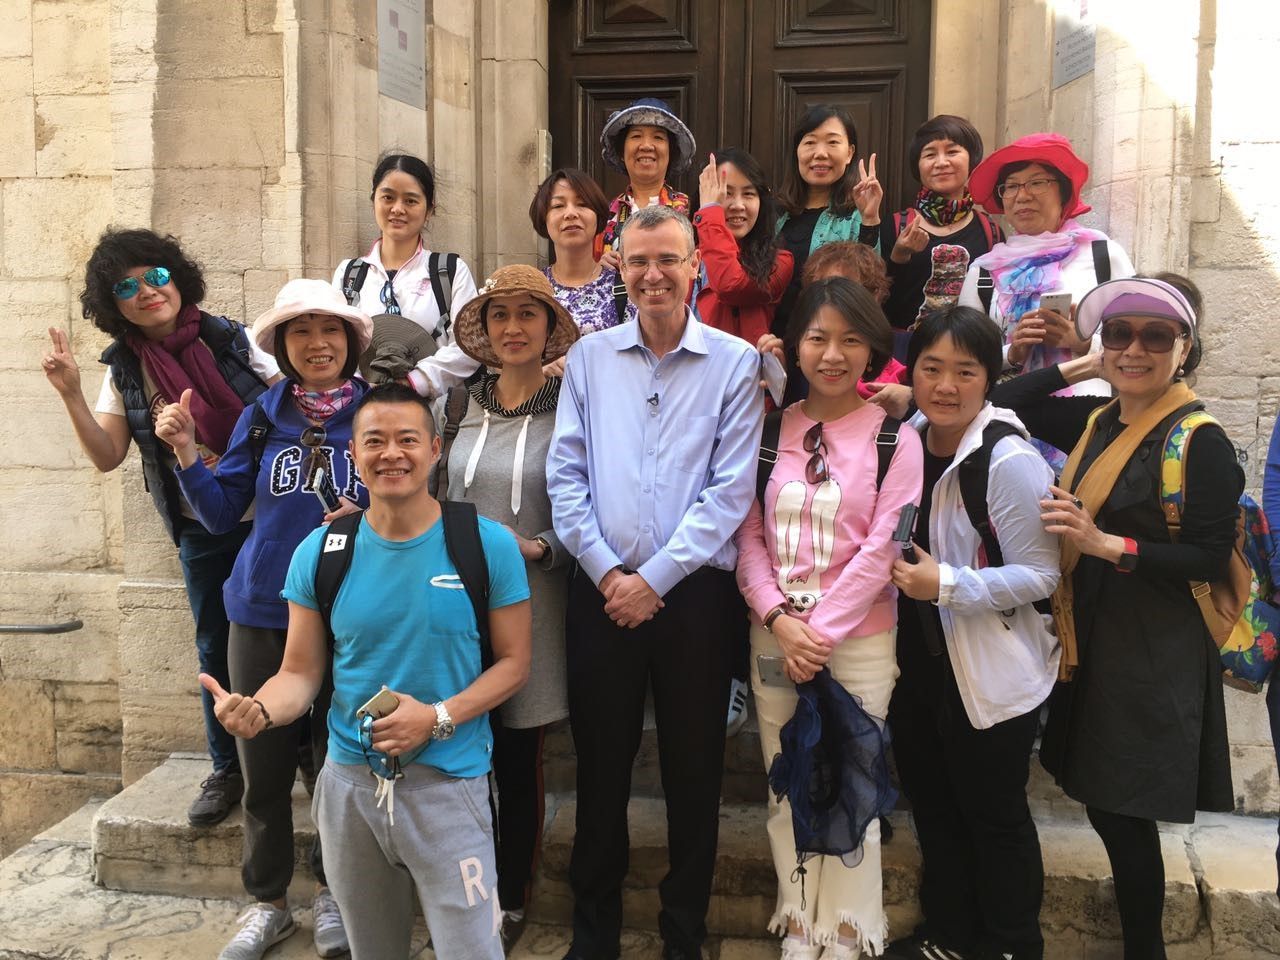 שר התיירות, יריב לוין עם תיירים מסין בעיר העתיקה בירושלים